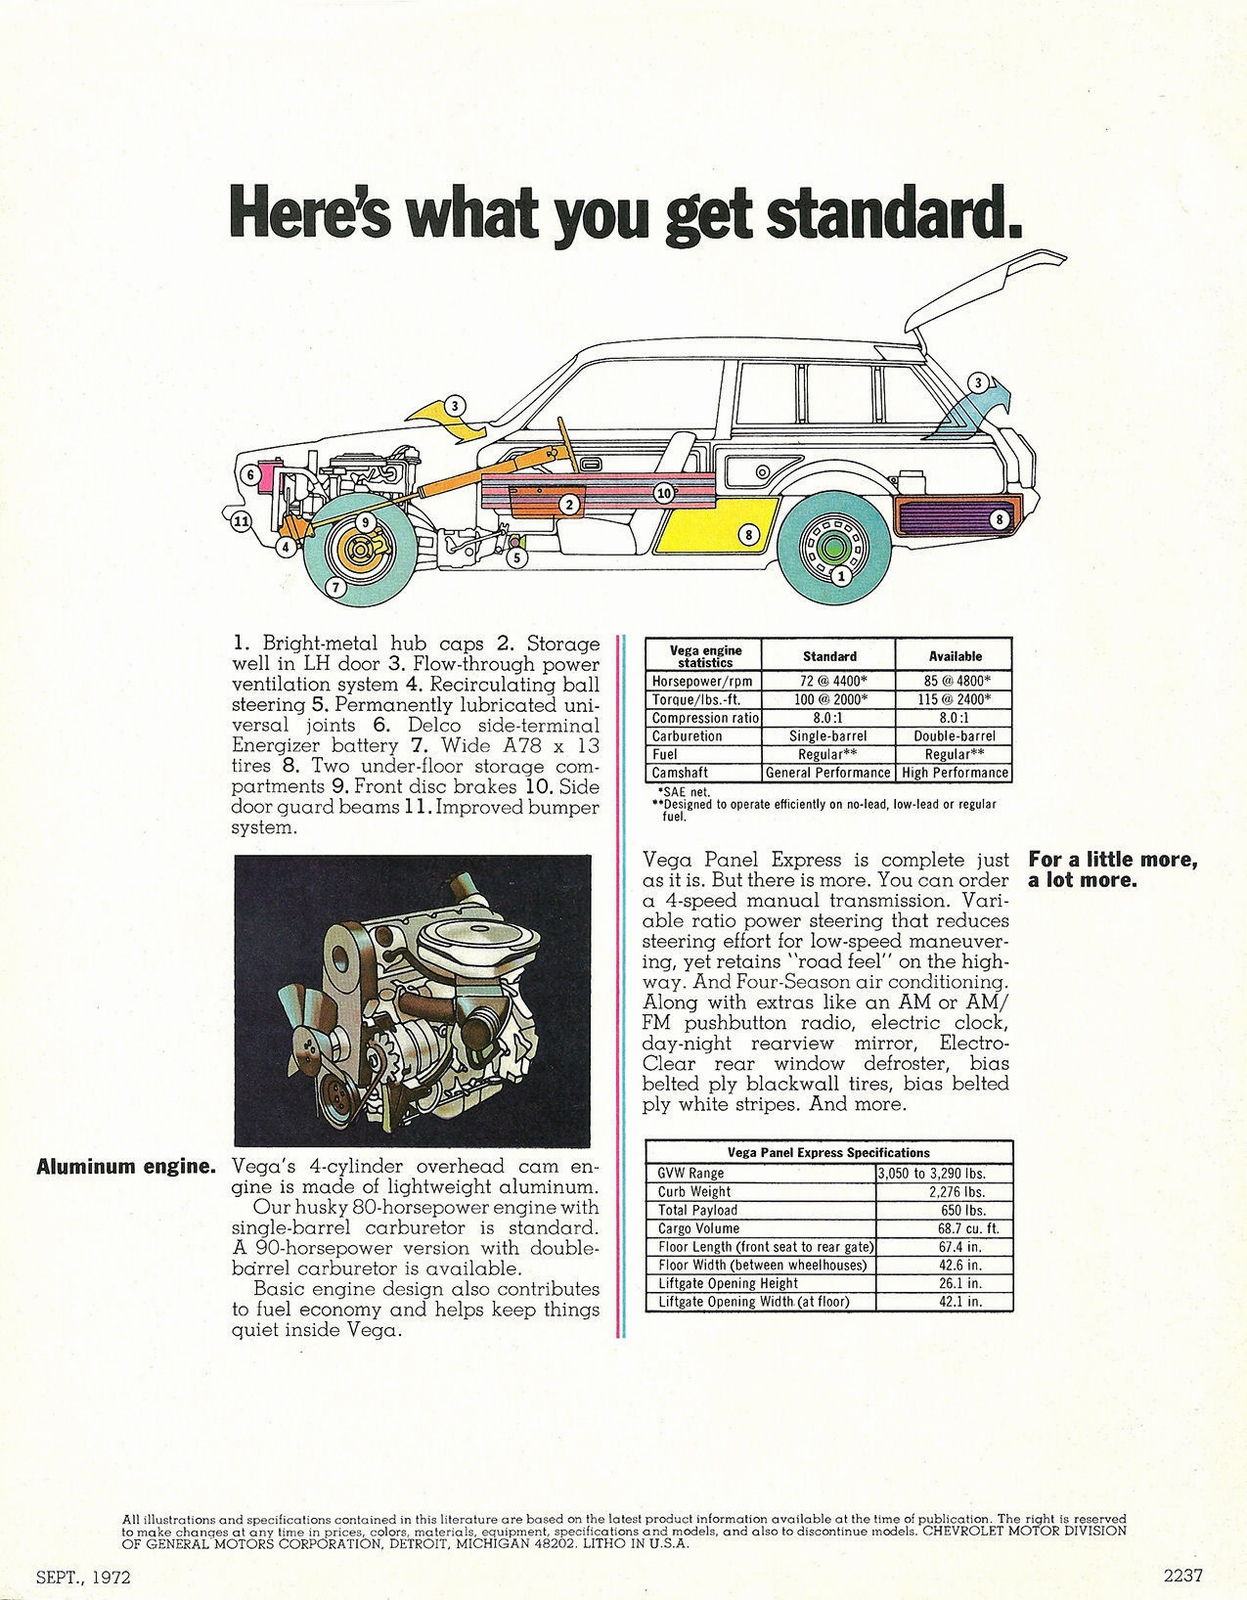 n_1973 Chevrolet Vega Panel Express-04.jpg